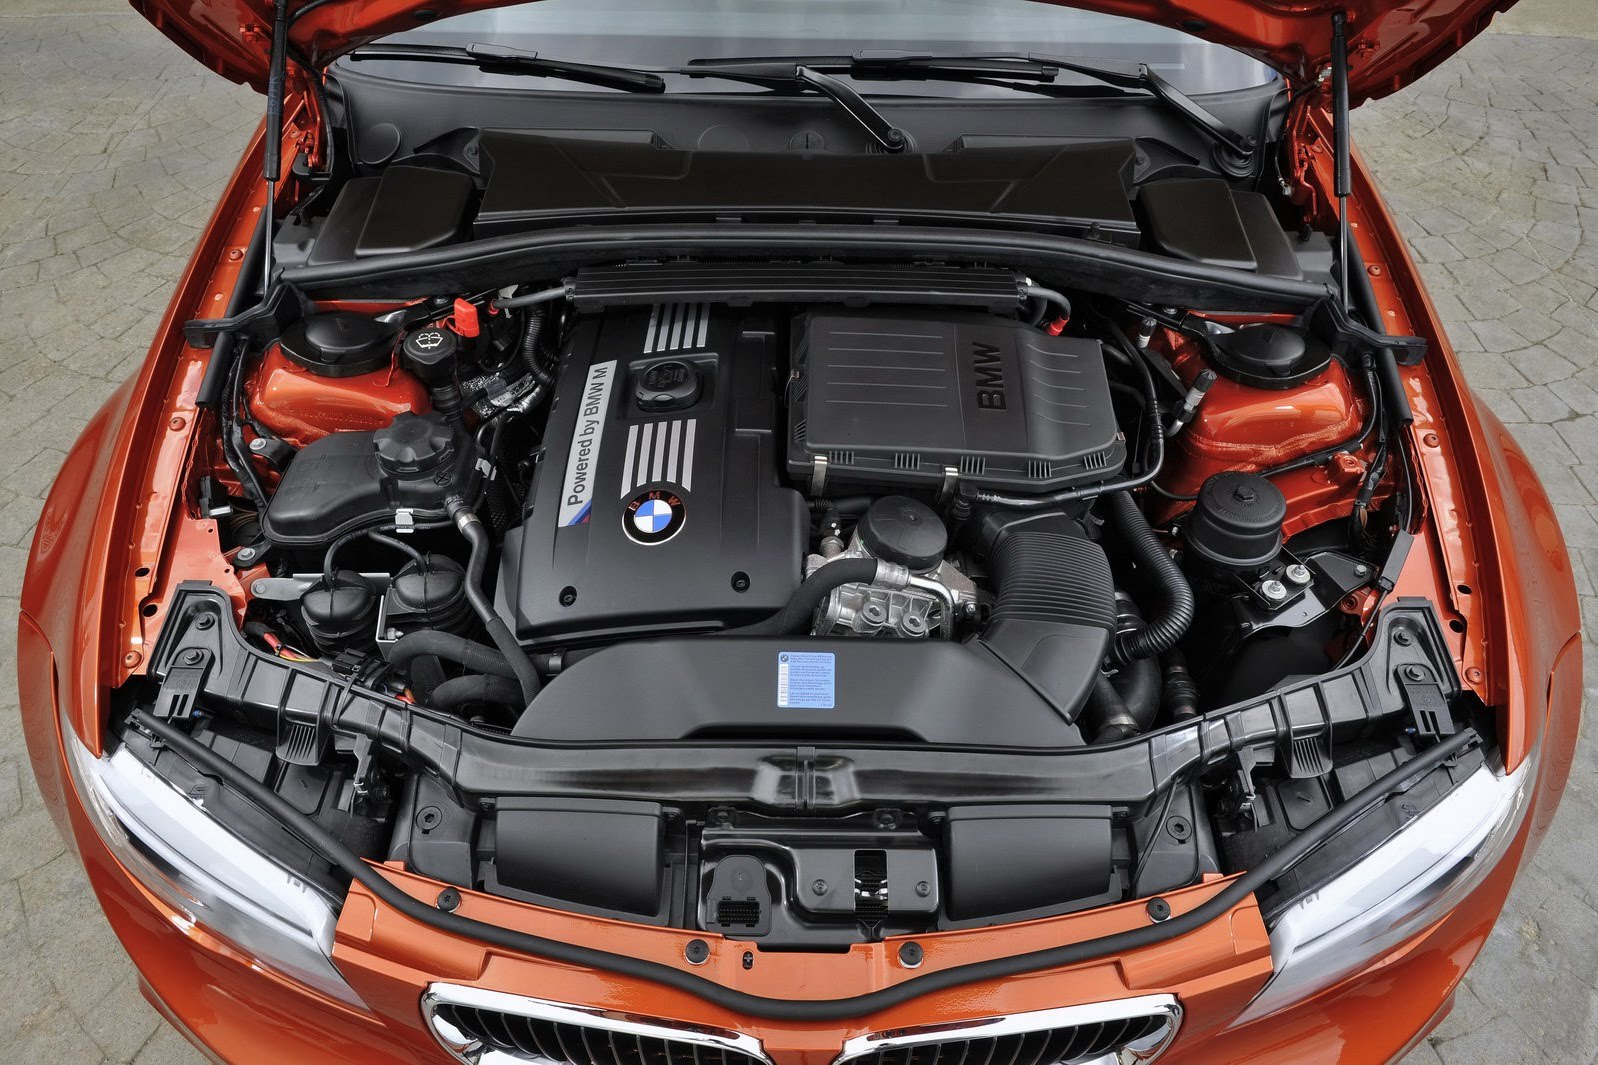 Motorul lui BMW Seria 1 M Coupe provine de pe BMW Z4 sDrive35is si are 335 CP